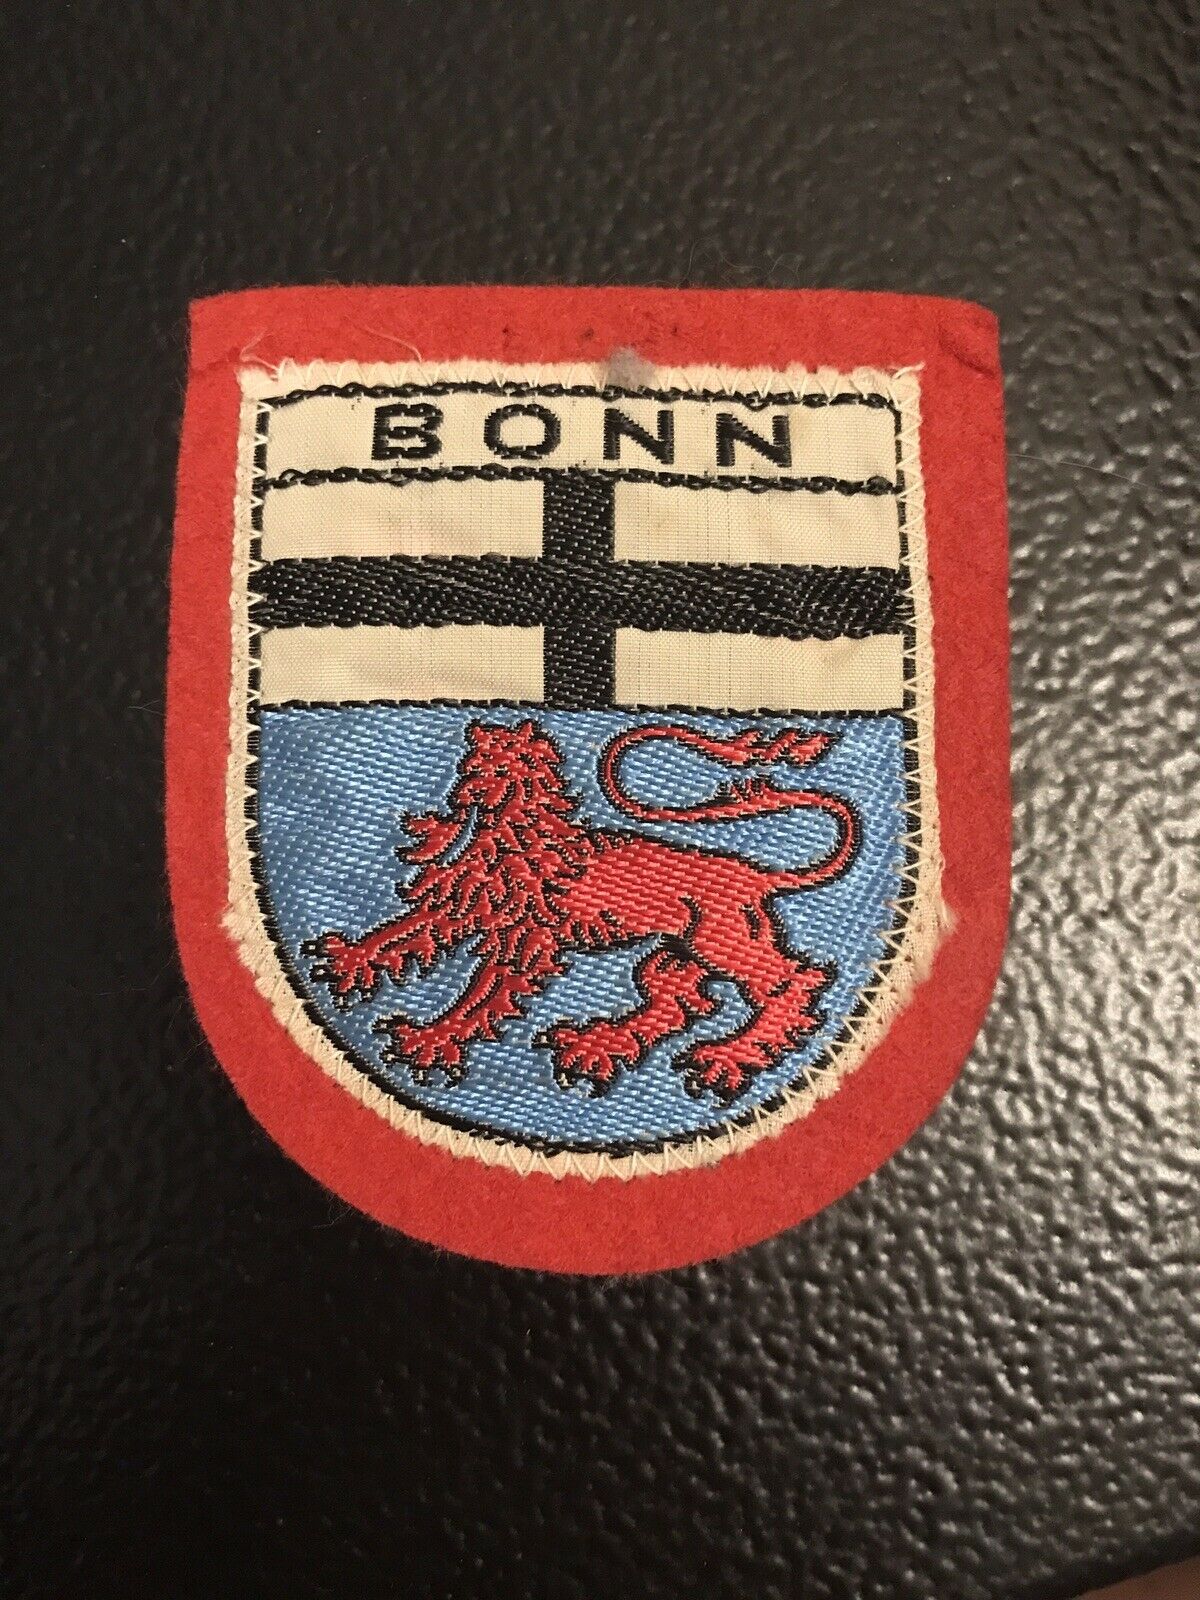 Bonn Germany Coat Of Arms Crest Lion Cross Souvenir Woven Felt Patch Badge